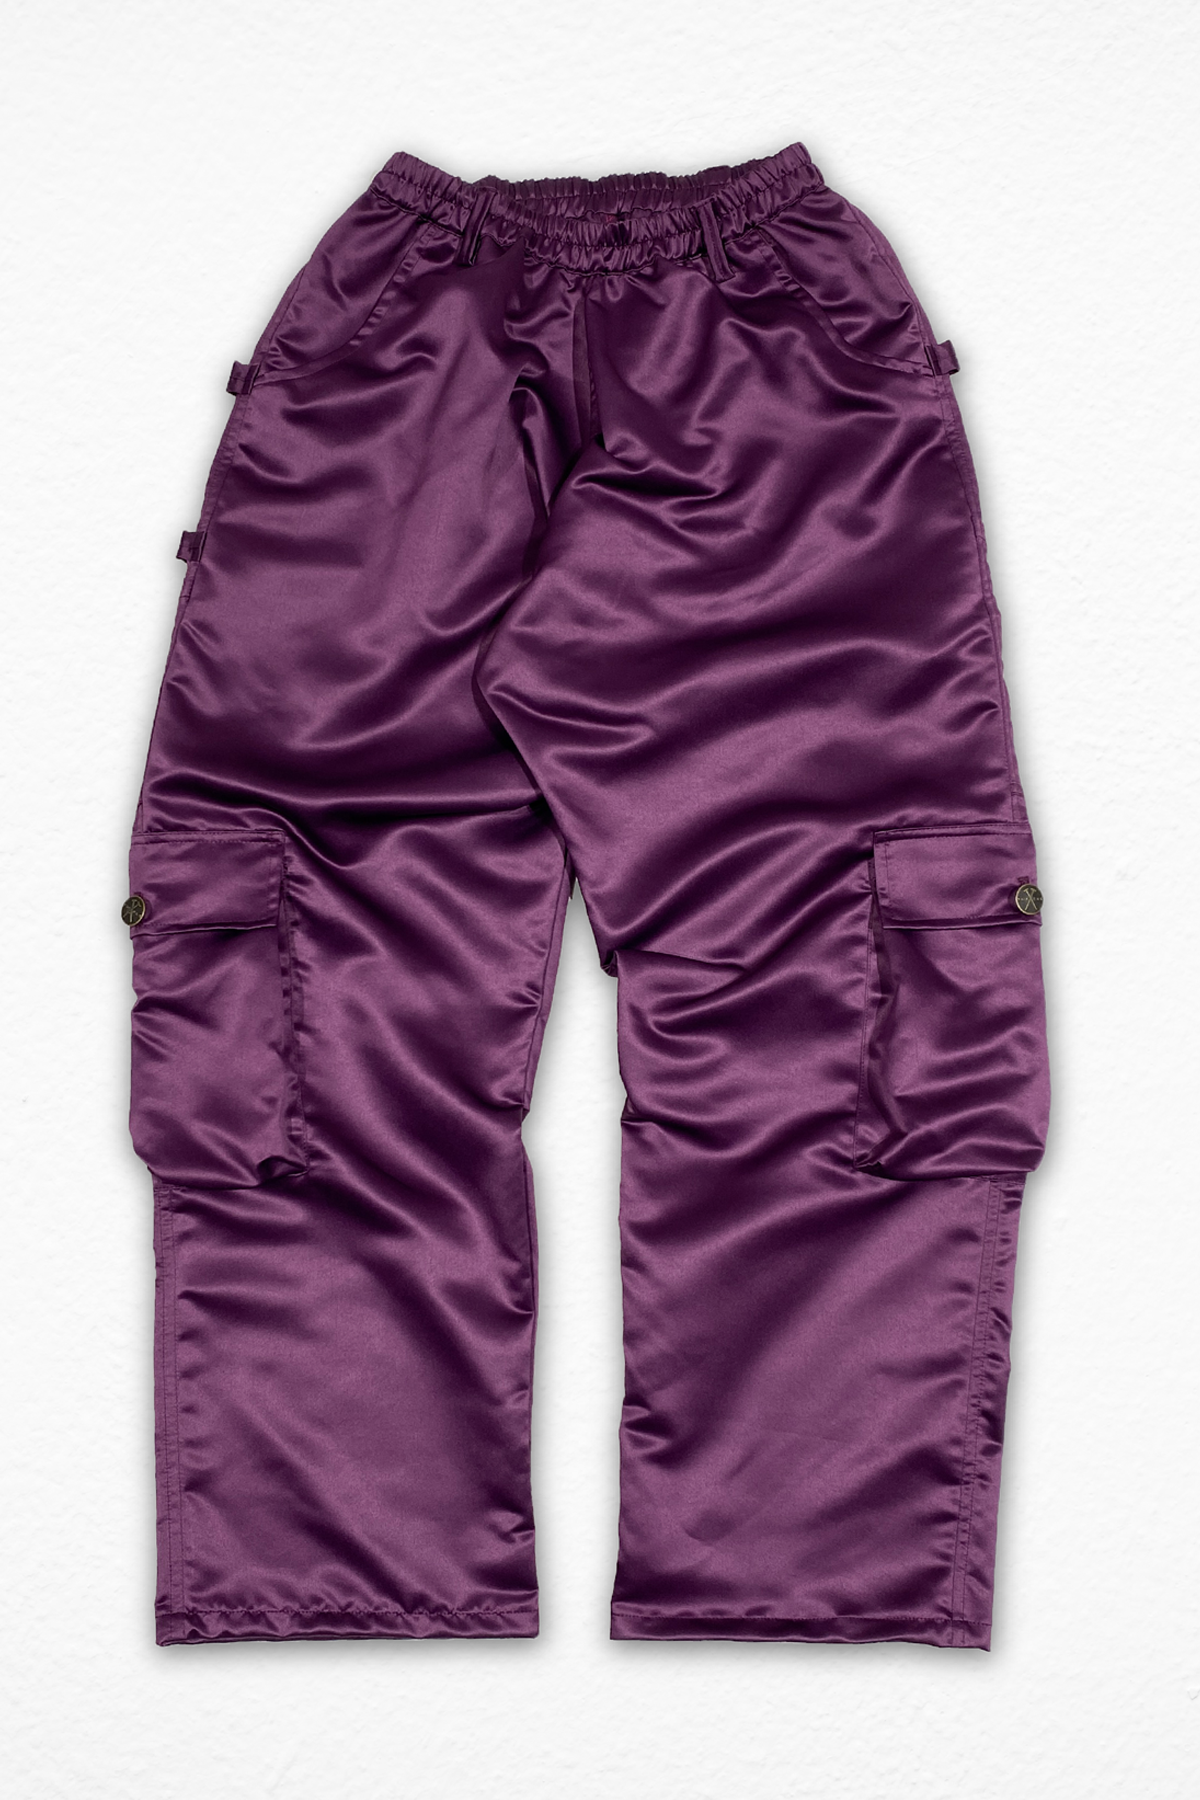 Purple Athleisure Pants